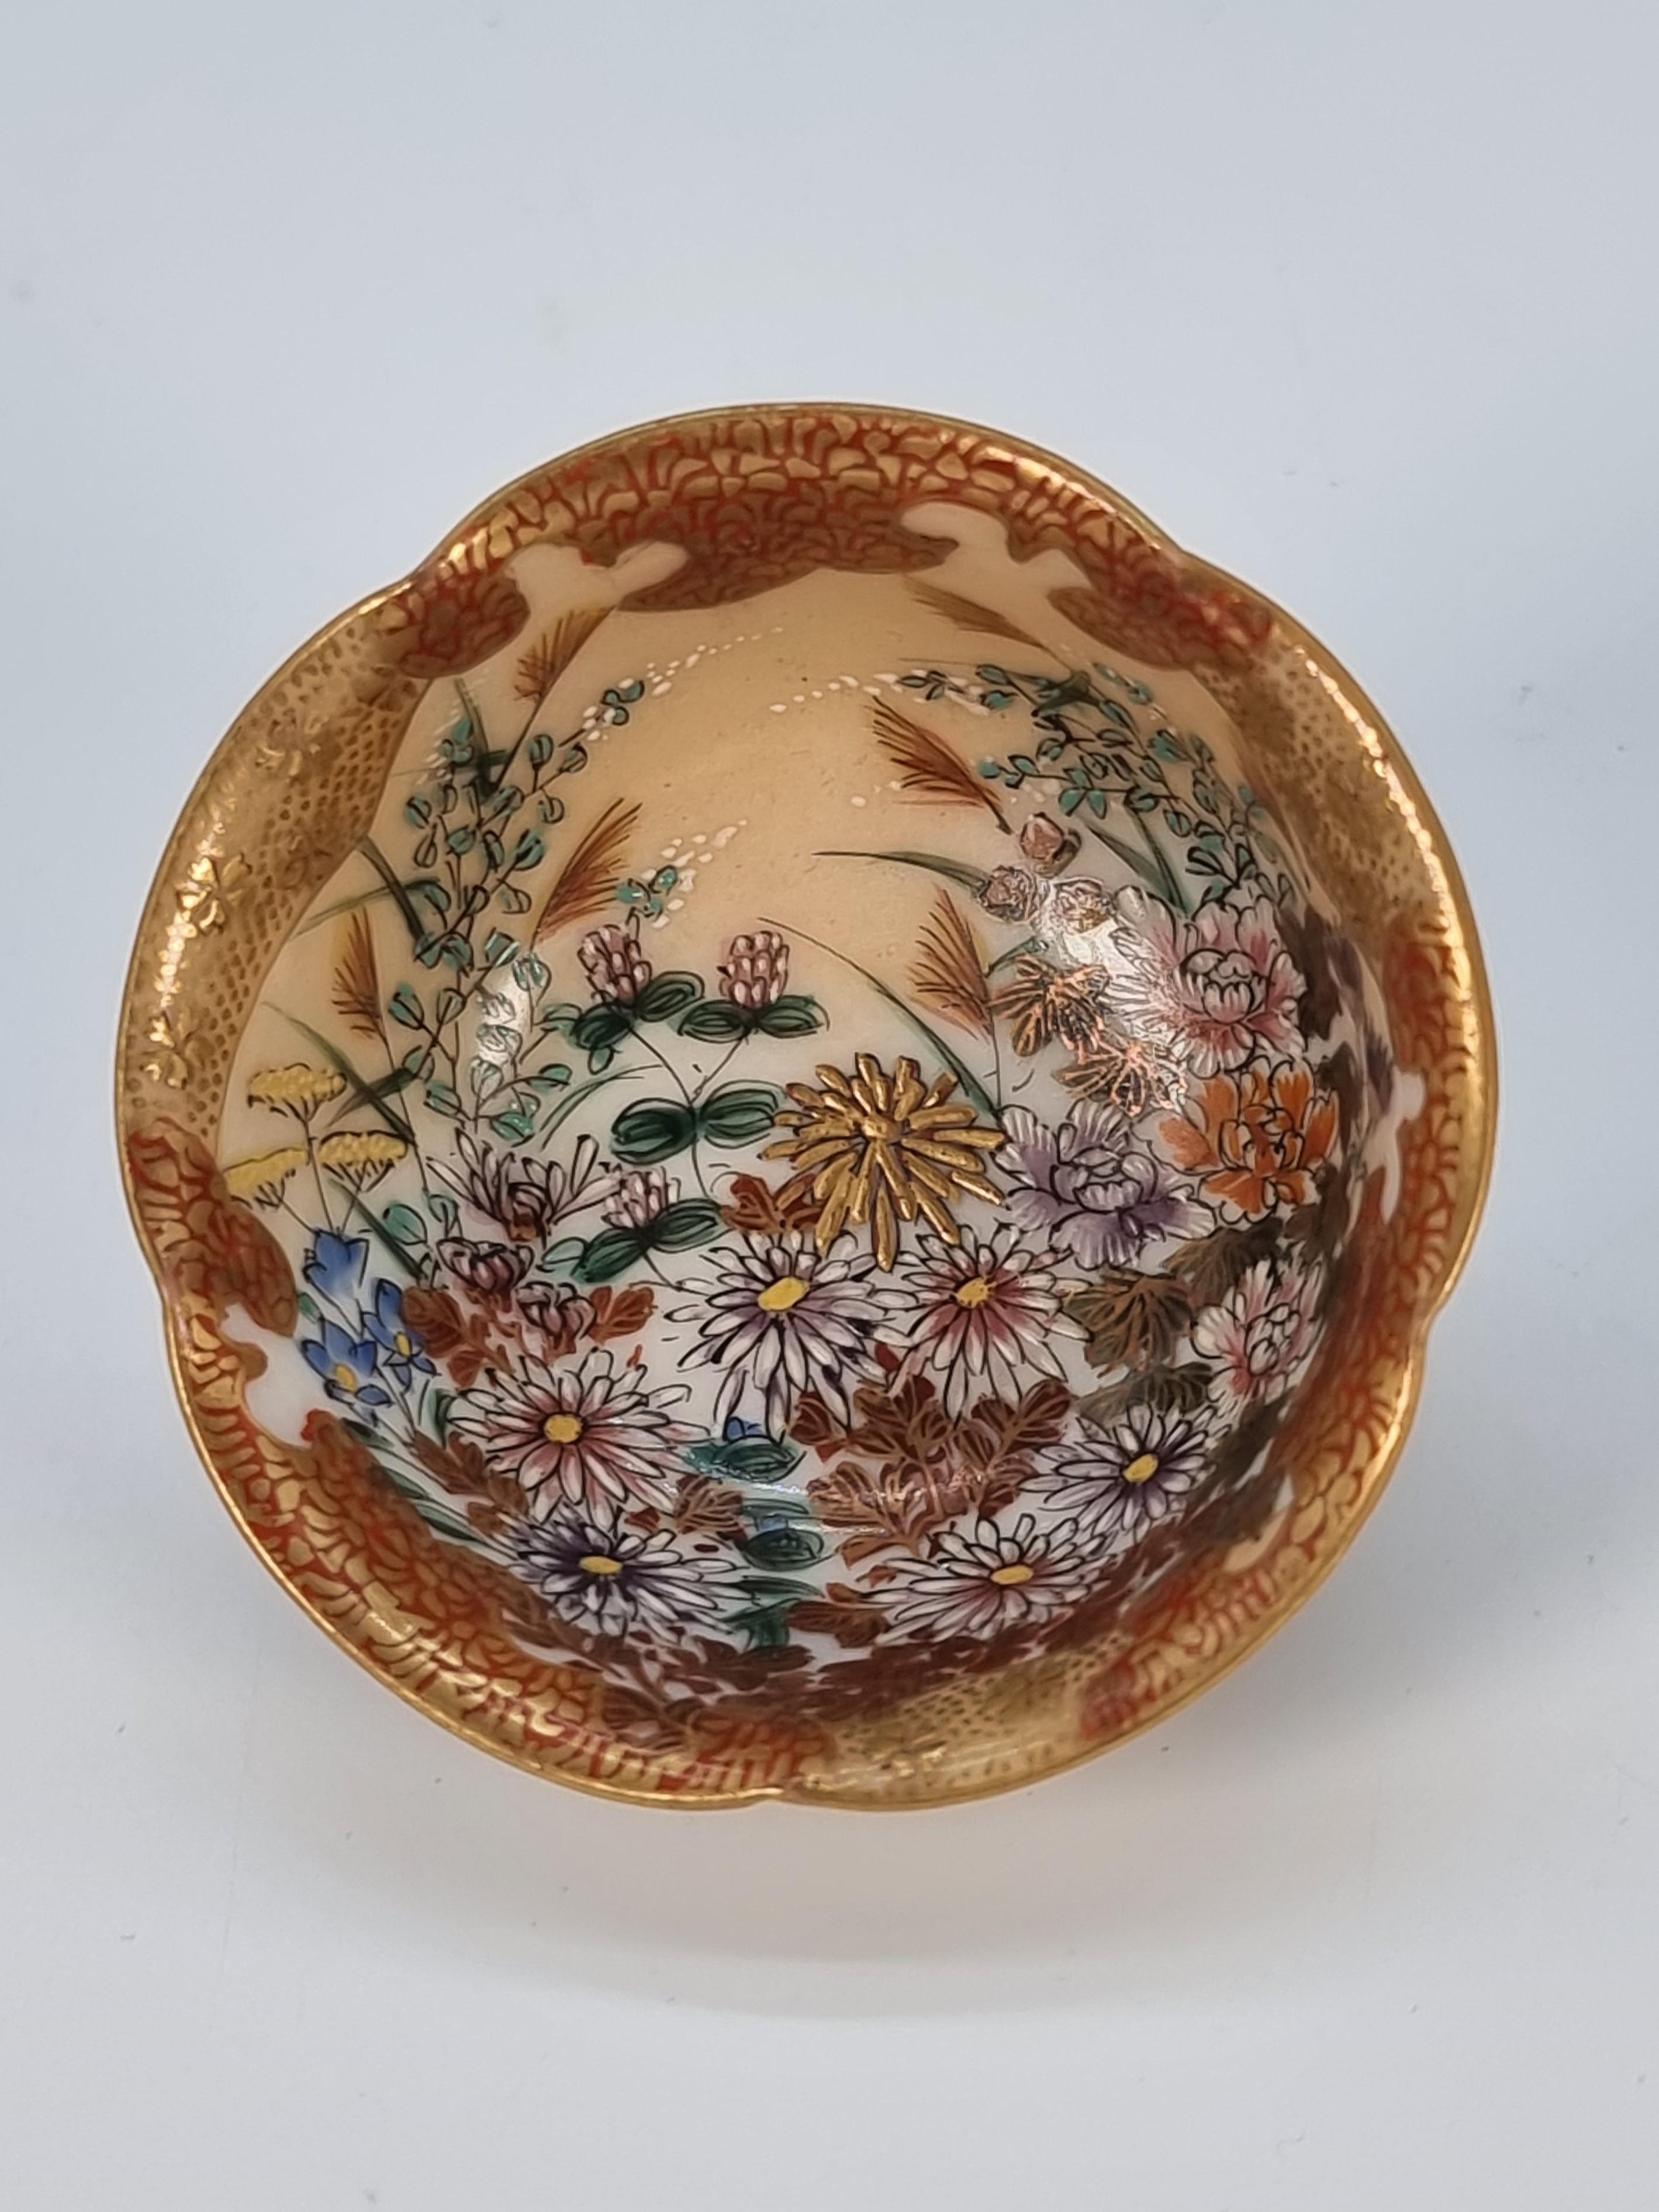 Diese prächtigen Miniatur-Porzellanschalen stammen aus der Region Kutani in Japan aus der Meiji-Zeit um 1880. Sie sind hervorragende Beispiele für einige ihrer besten Arbeiten, die nur selten zu kaufen sind. Dieses winzige Schalenpaar ist aufwändig